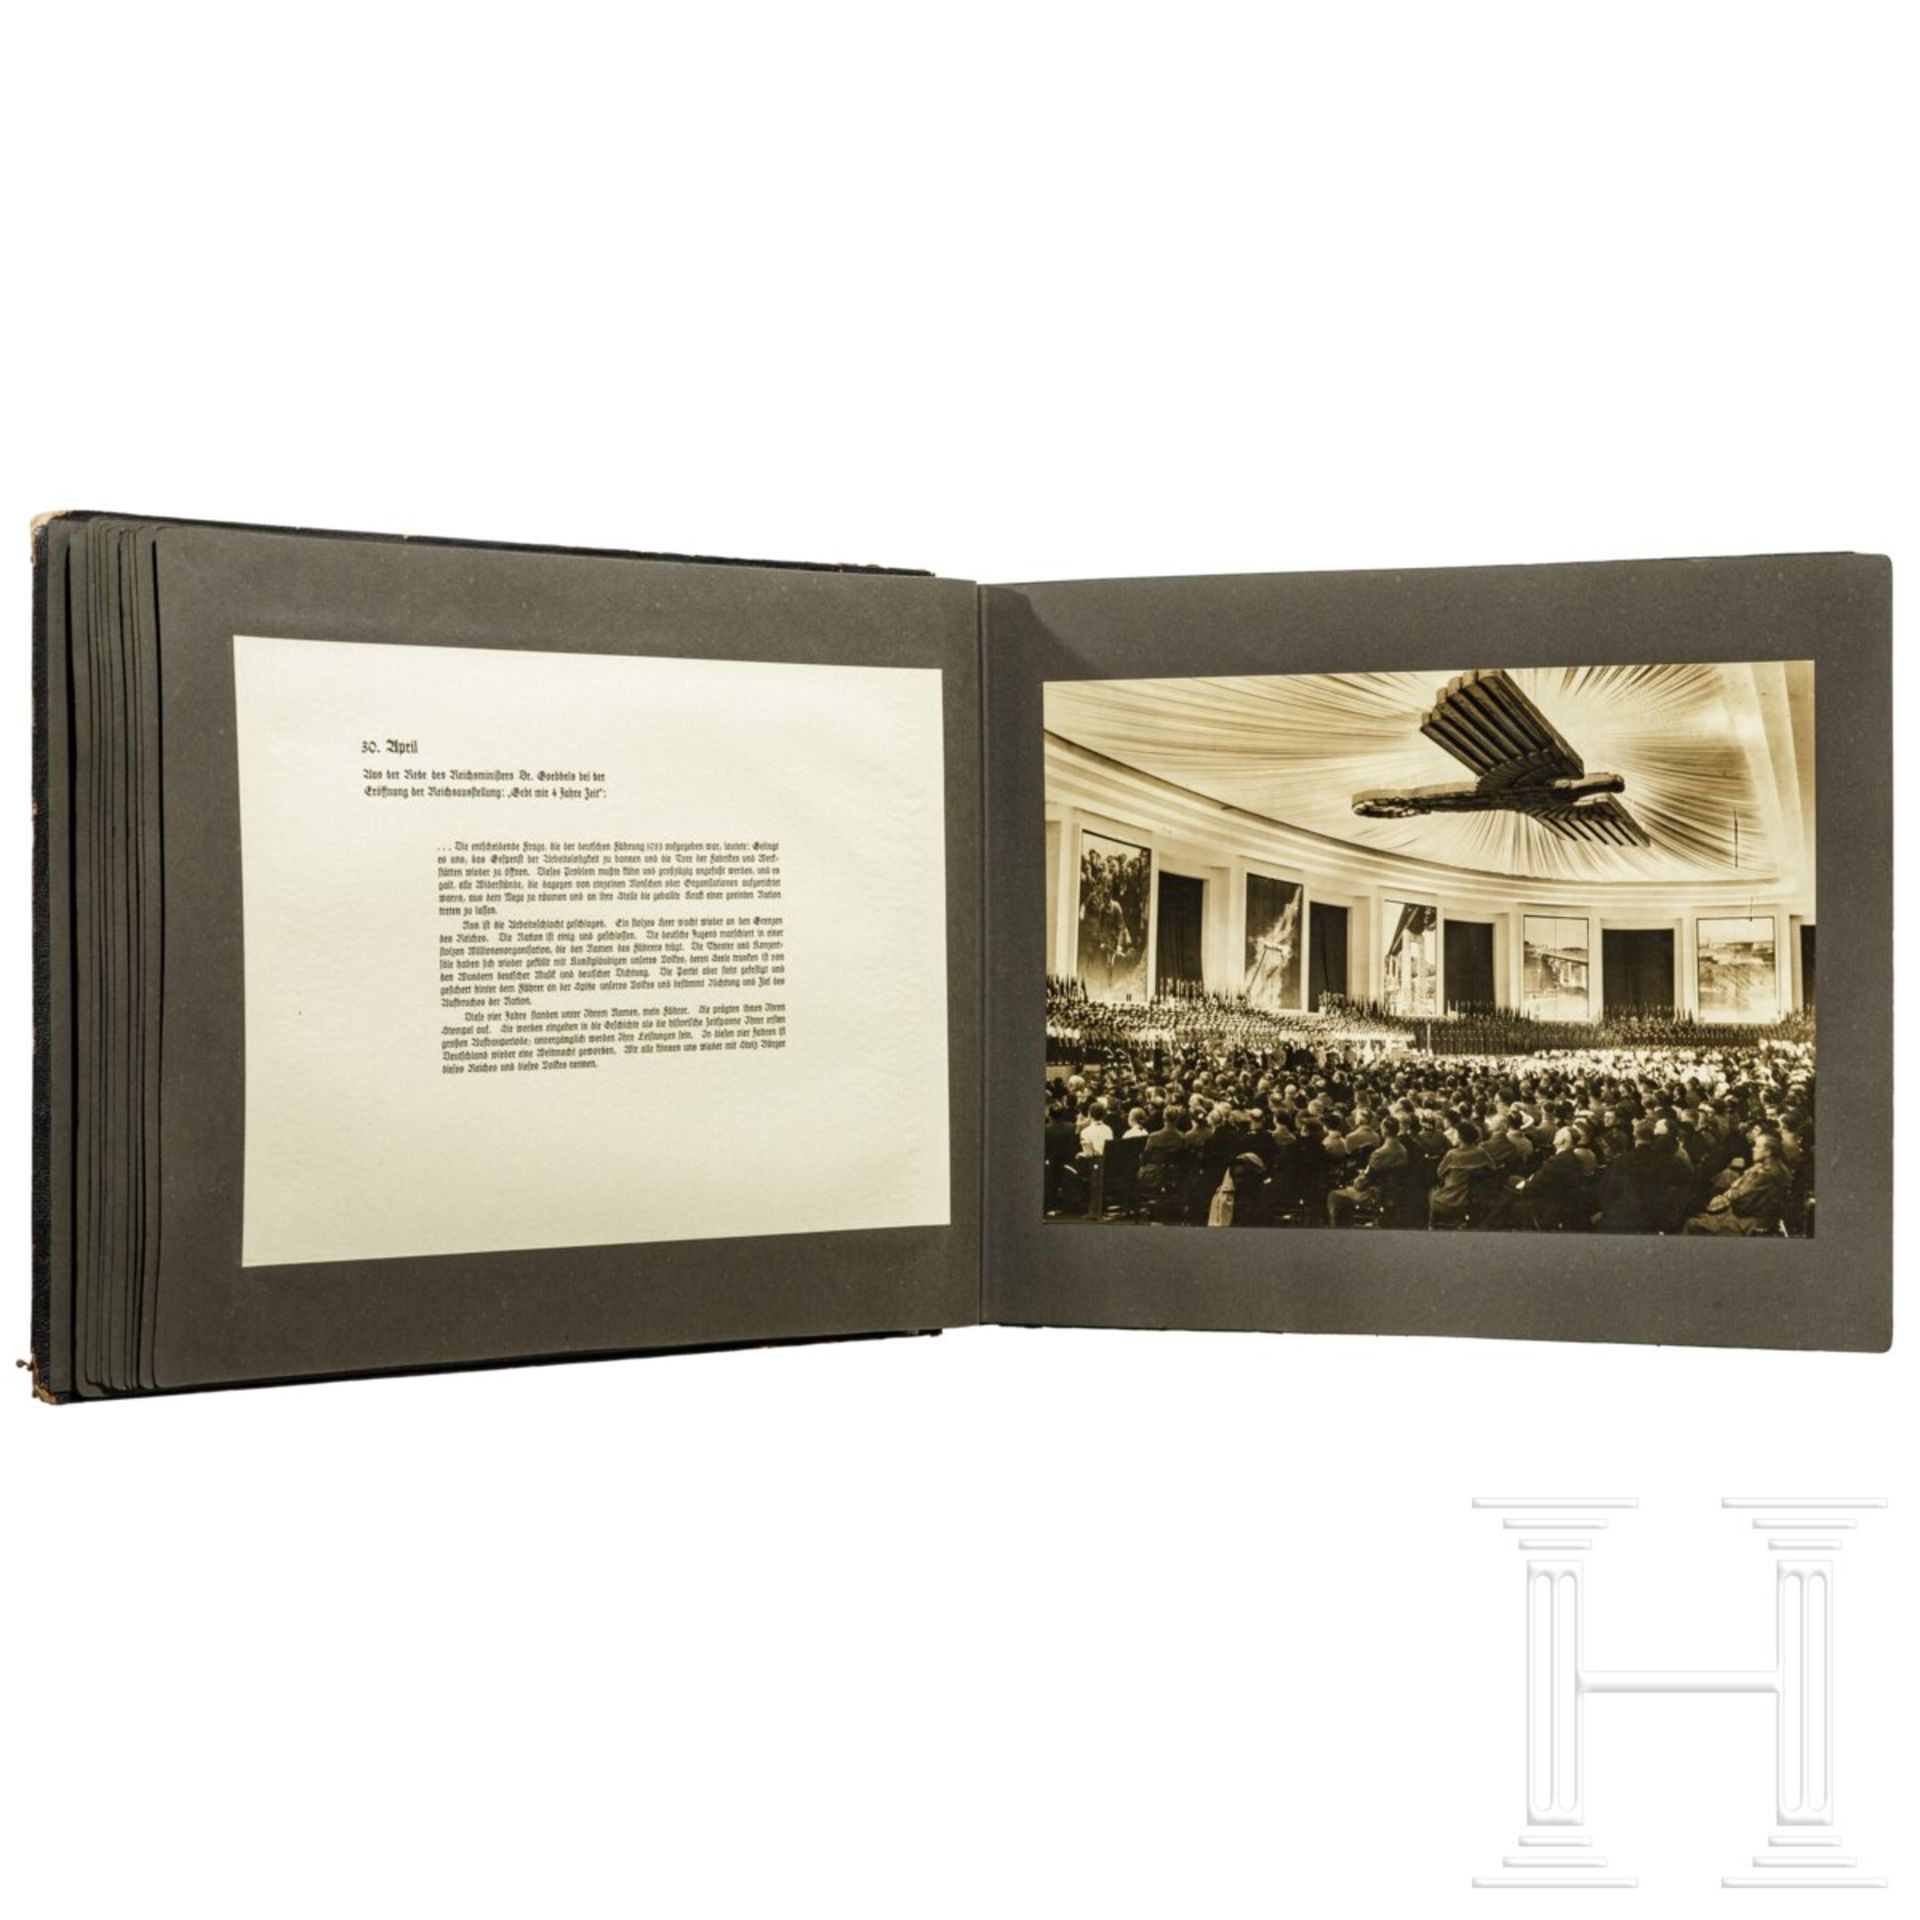 Geschenk-Fotoalbum der Partei 1937 mit 56 großformatigen Fotos und Textblättern - Image 16 of 17